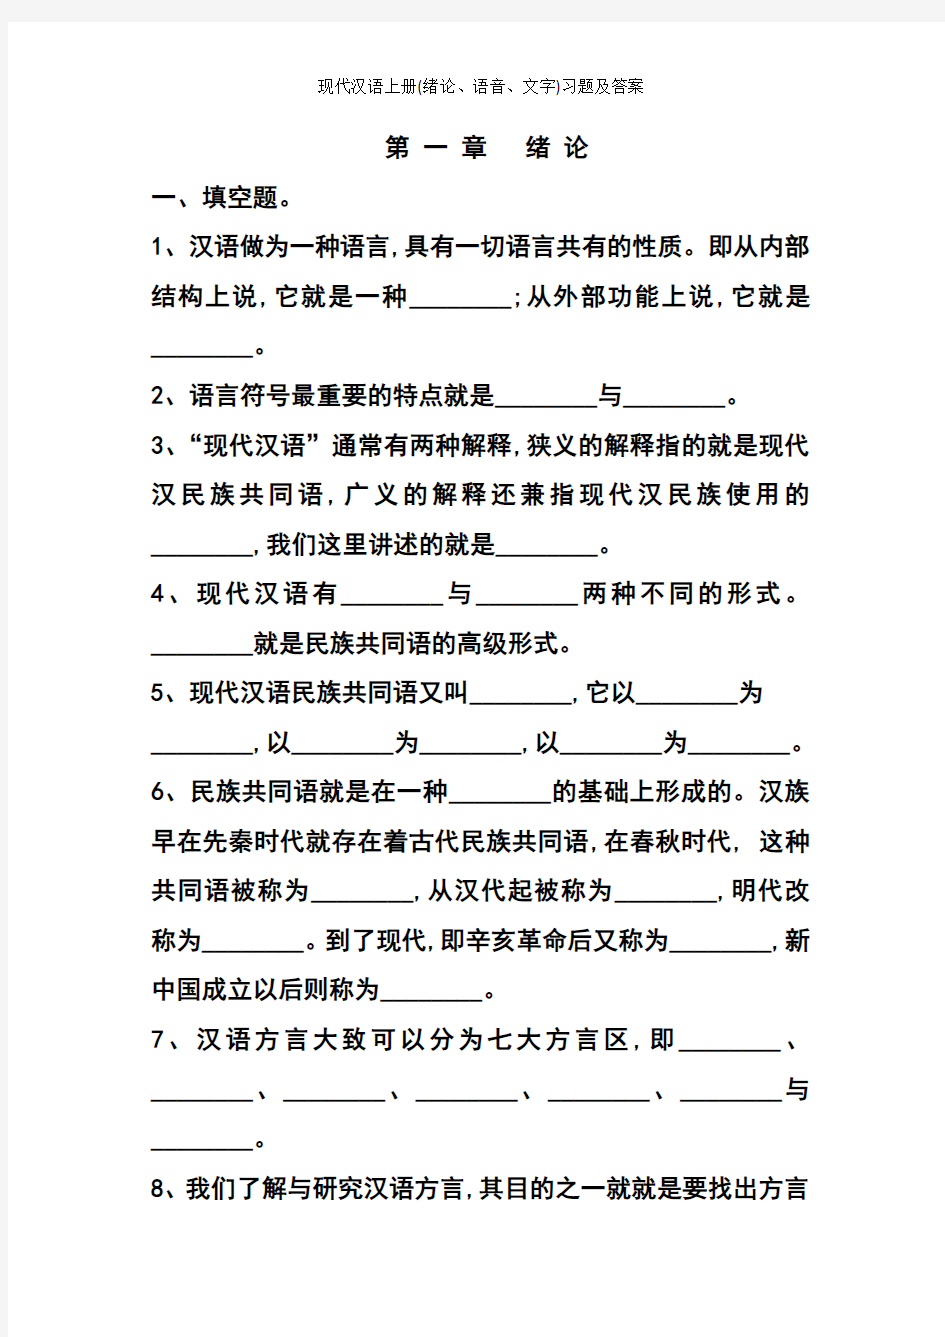 现代汉语上册(绪论、语音、文字)习题及答案